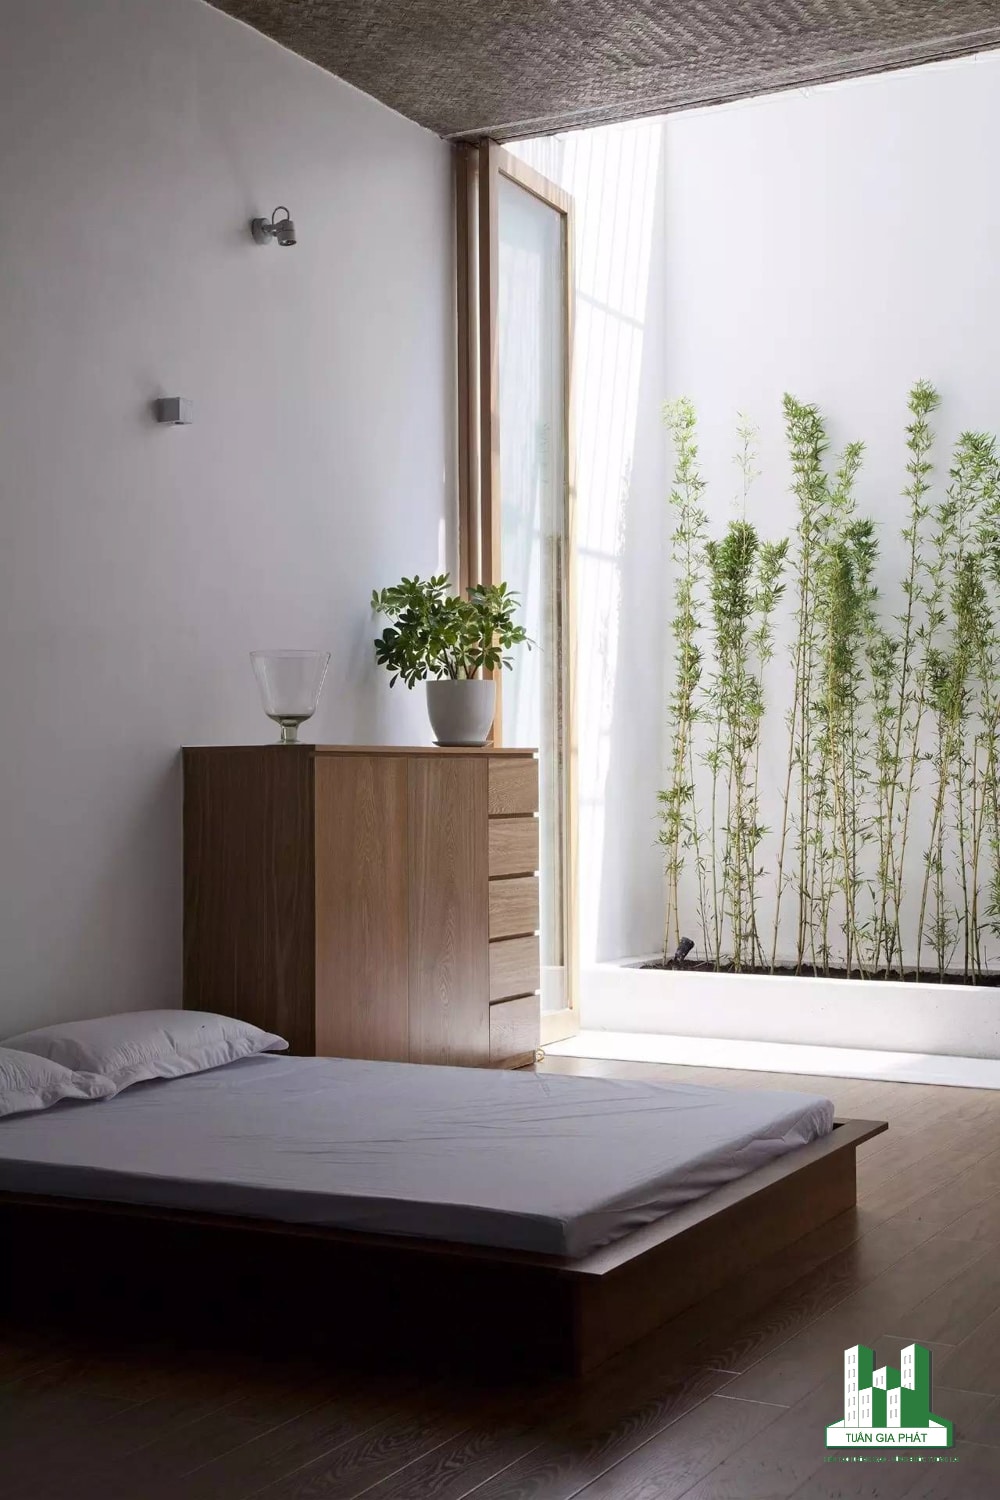 Phòng ngủ Zen tối giản với đồ nội thất bằng gỗ, bộ khăn trải giường màu trắng. Phòng có một cửa kính dạng gấp kết nối thông với không gian ngoài trời.